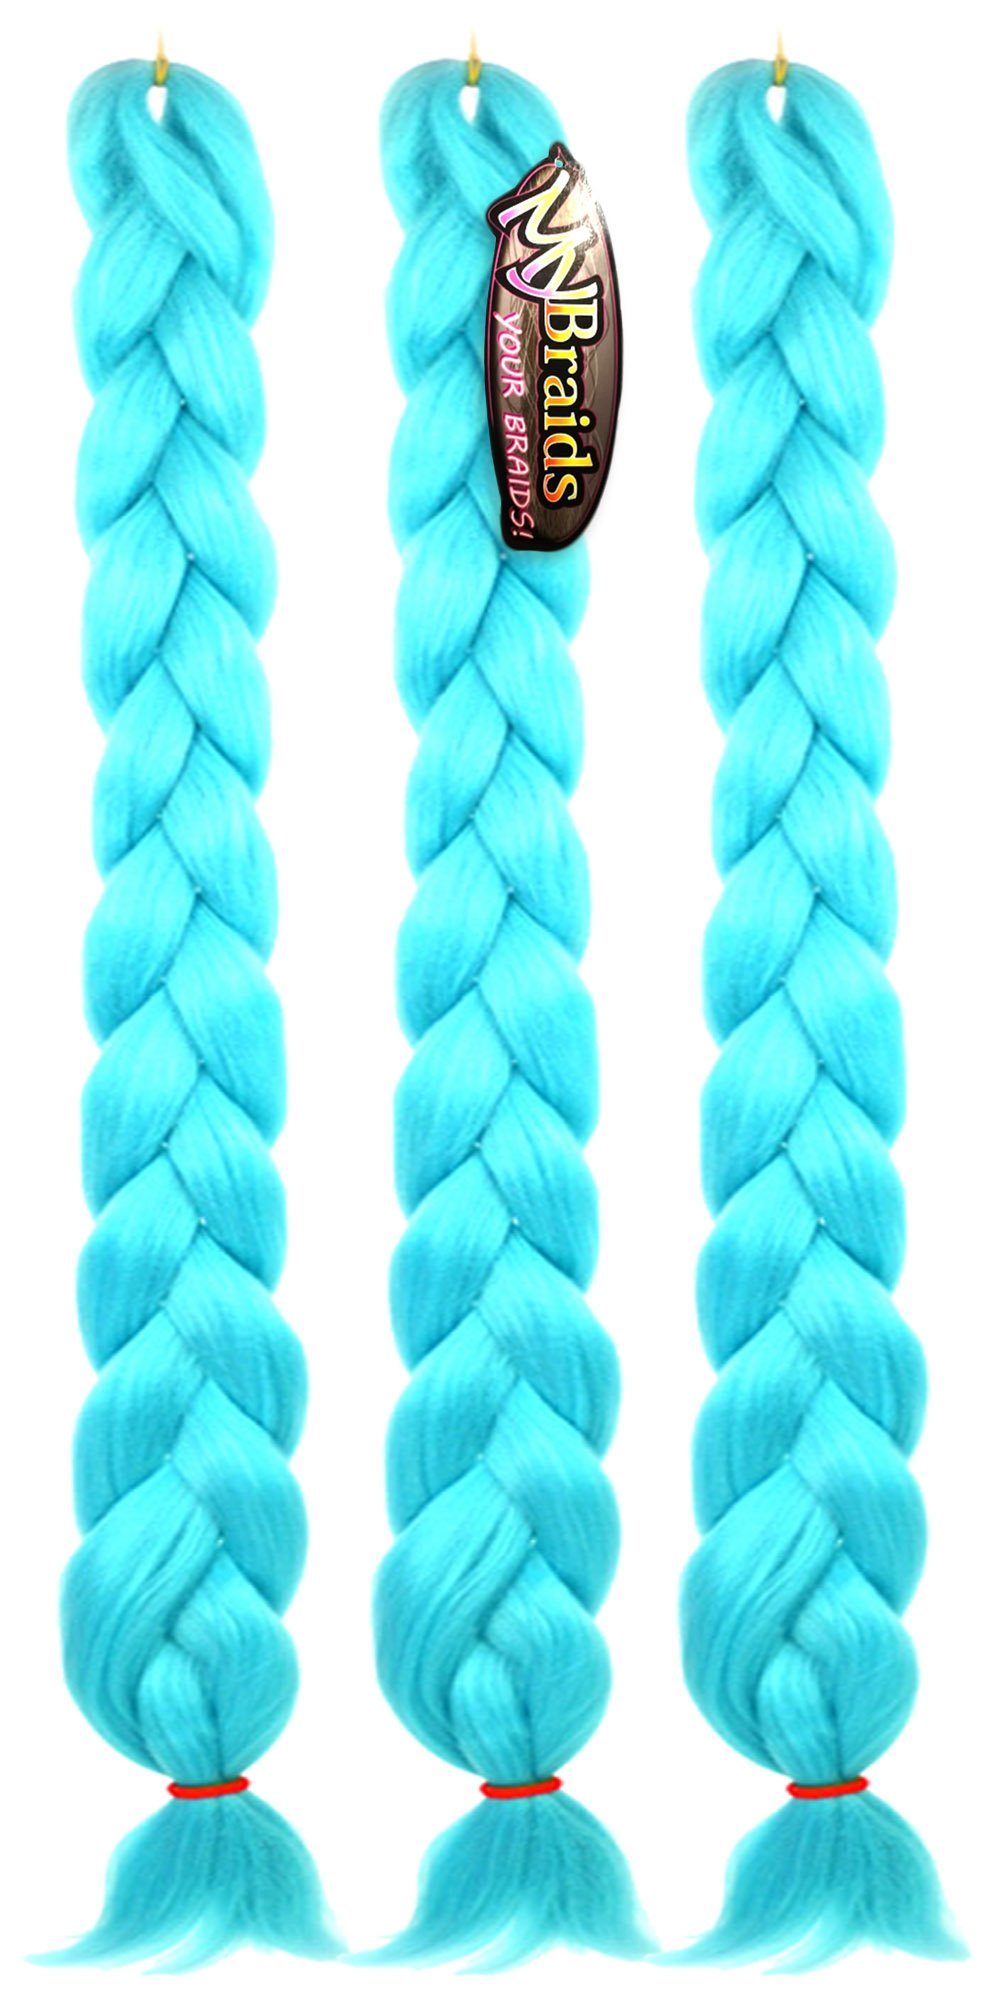 Zöpfe 3er Pack YOUR Braids Premium Wasserblau MyBraids Flechthaar im 1-farbig 2m mit Helles Kunsthaar-Extension 32-AY Länge BRAIDS!